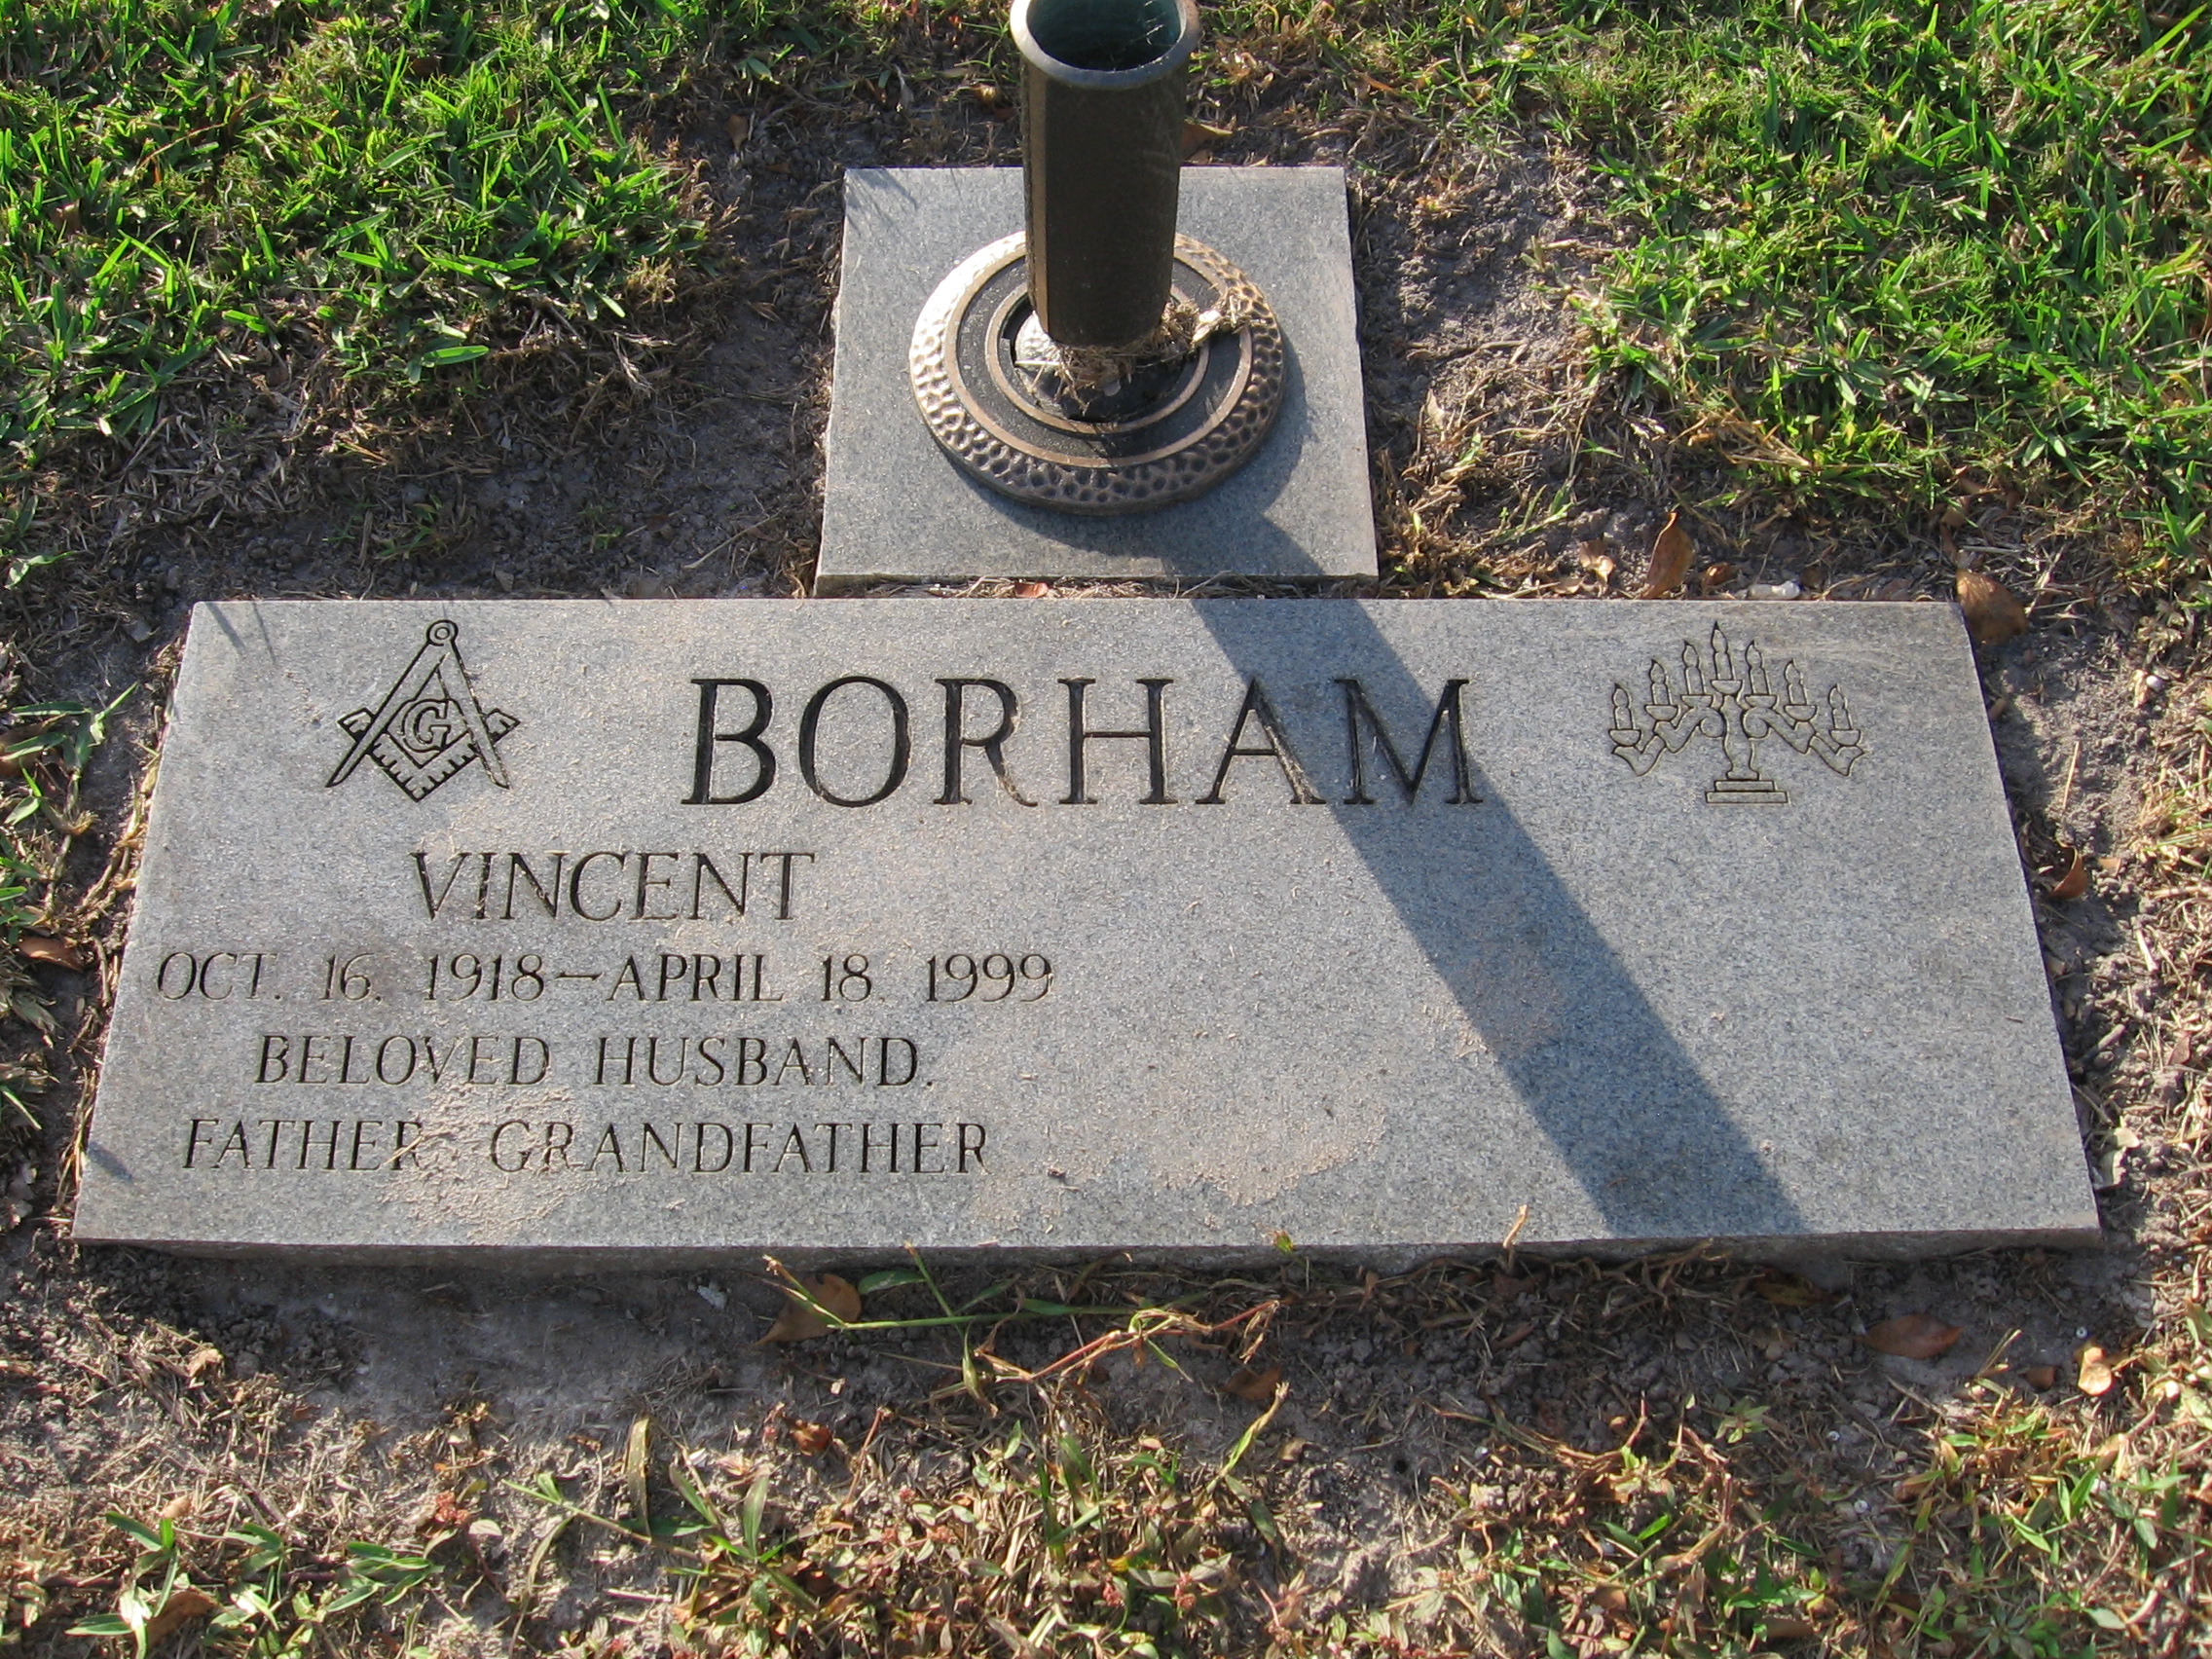 Vincent Borham